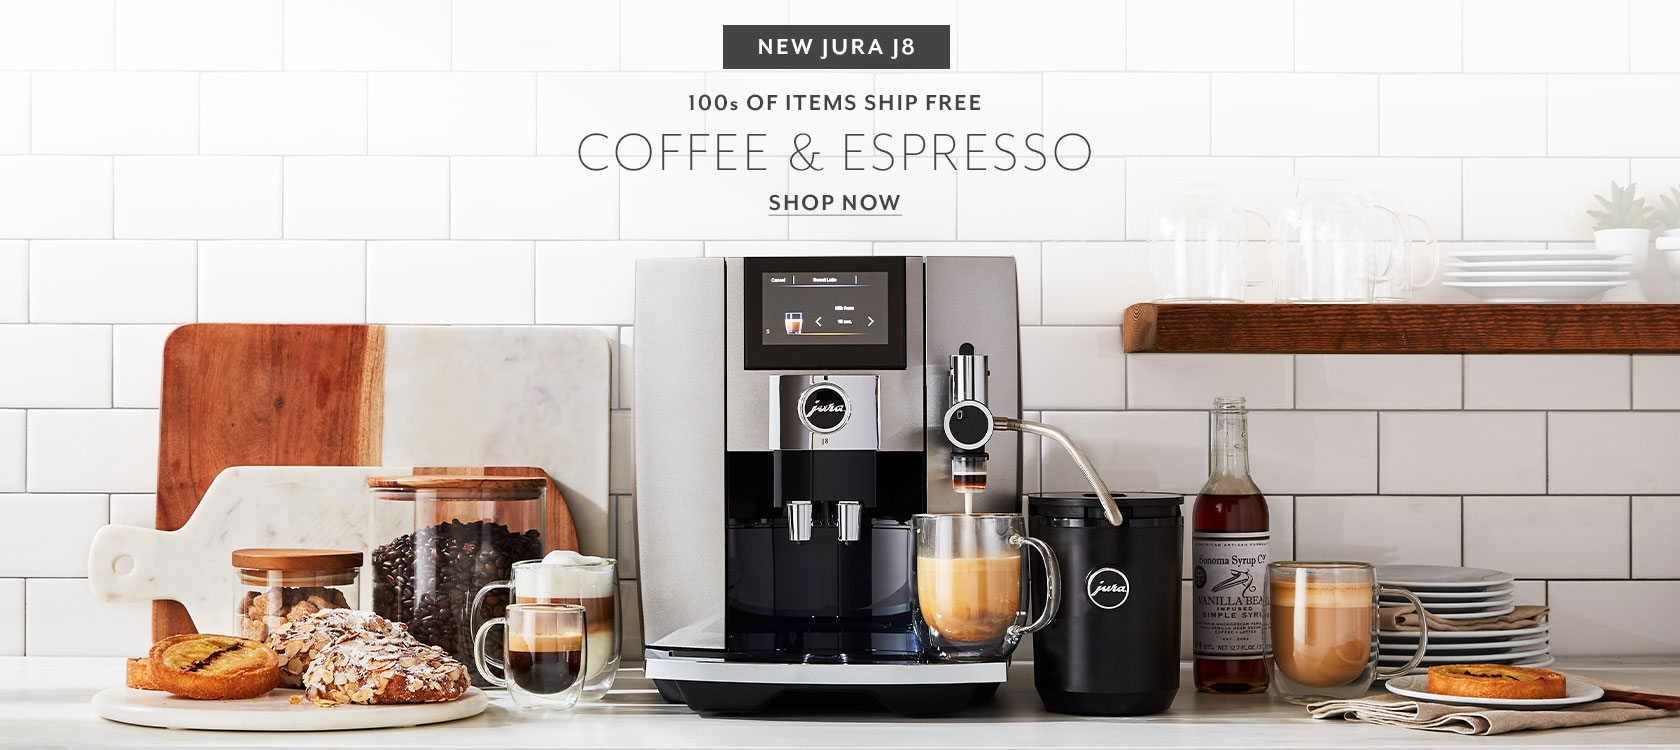 New JURA J8 Coffee & Espresso. Hundreds of items ship free. Shop now.